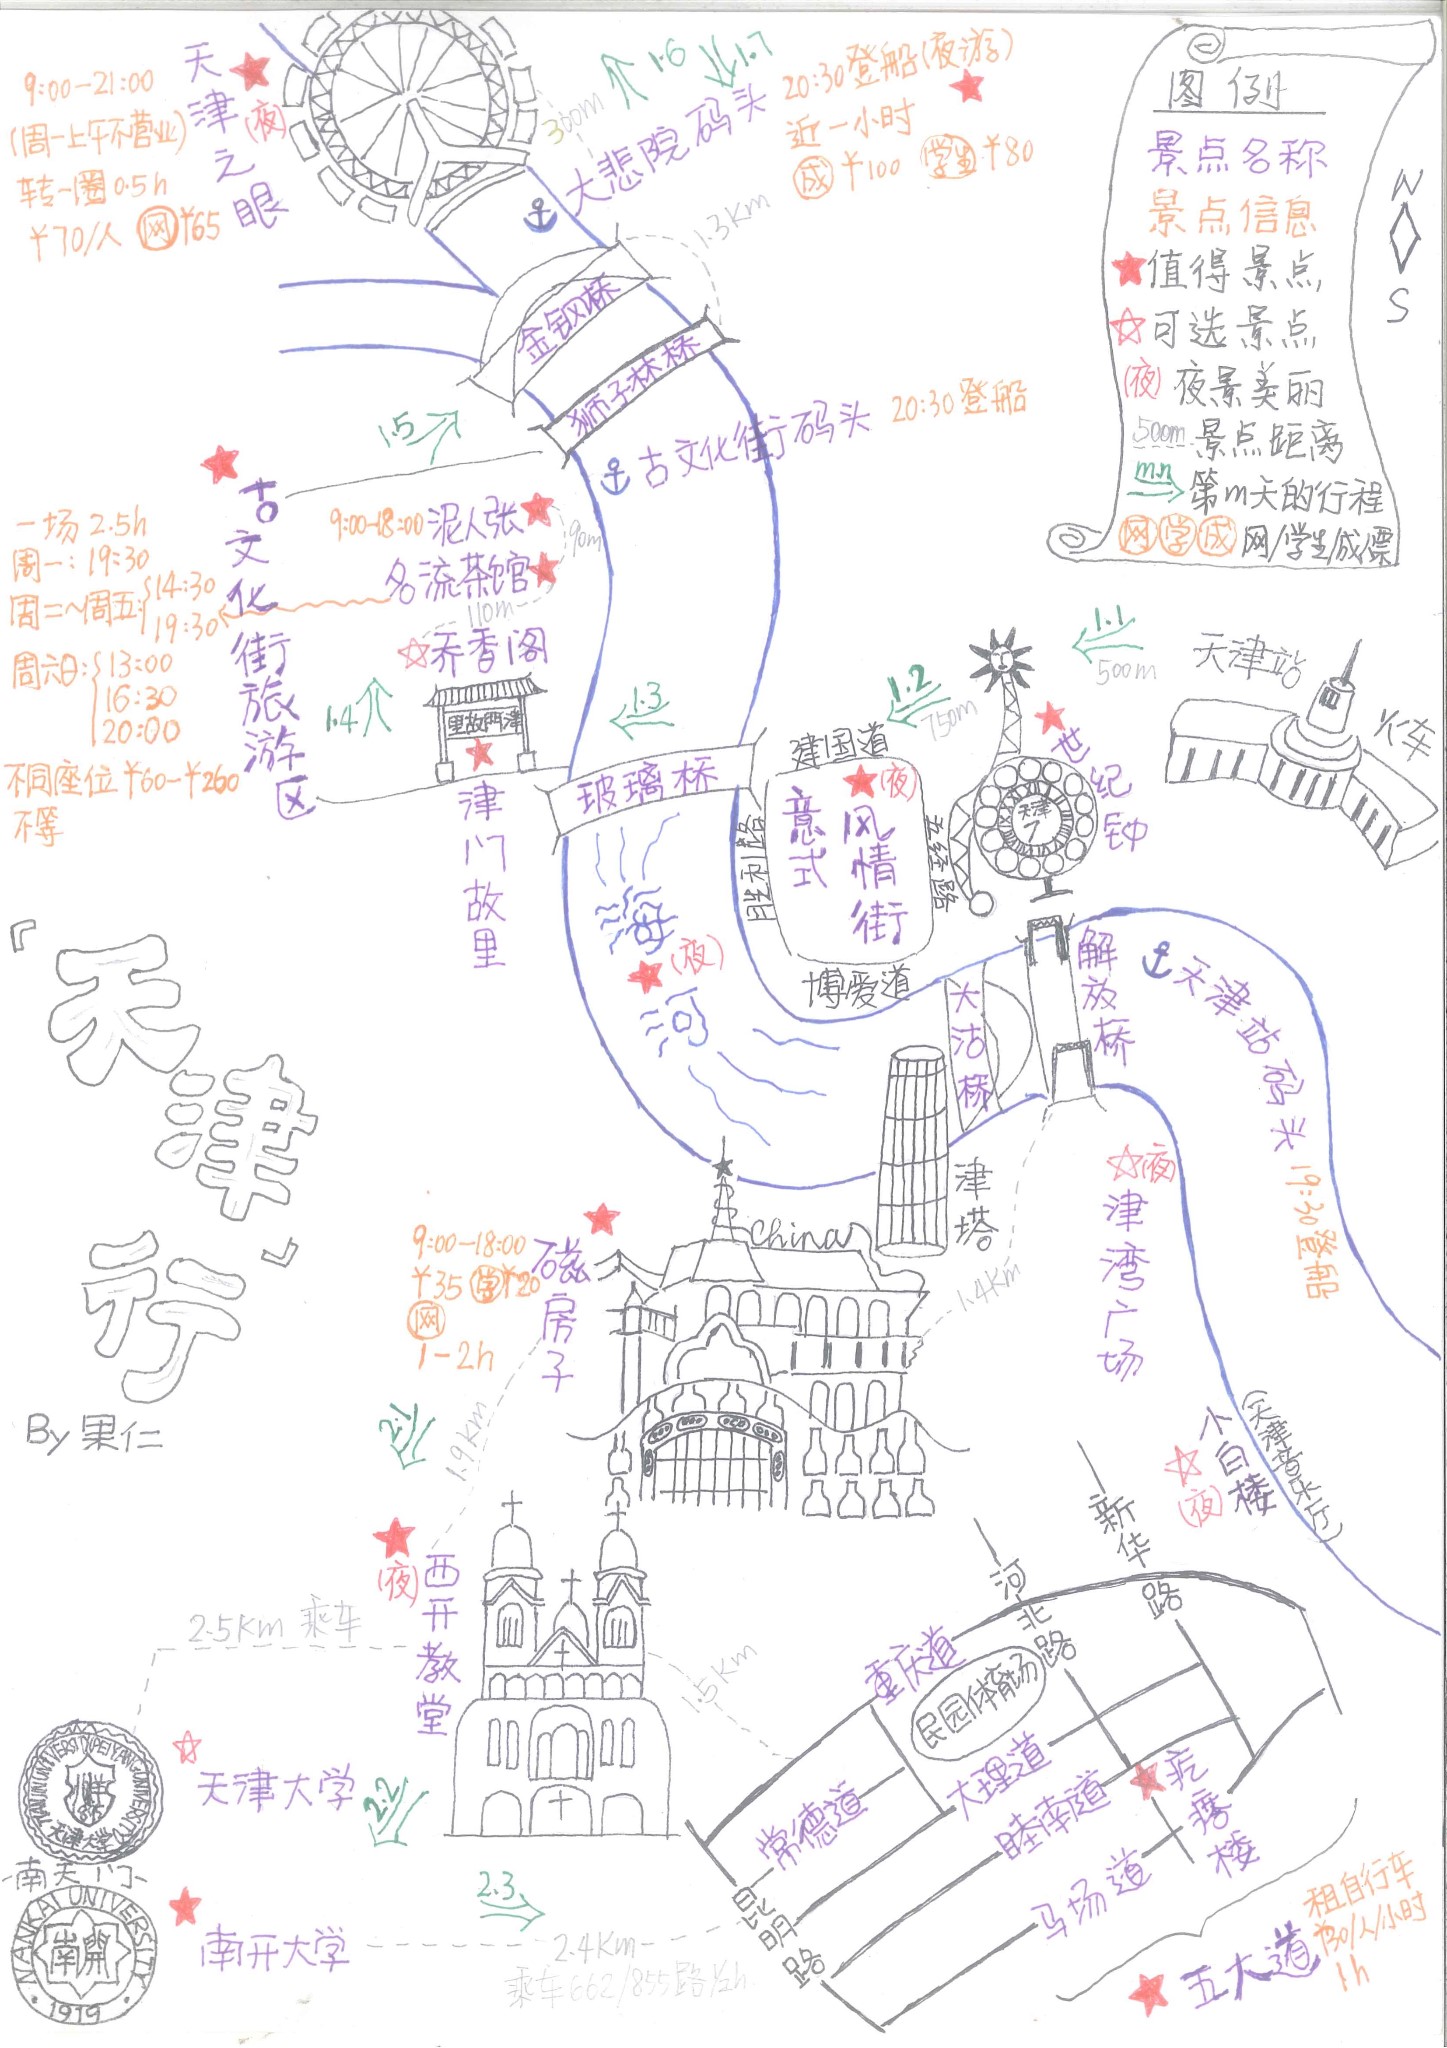 回复游记:携一张手绘攻略地图,轻松玩转天津市区